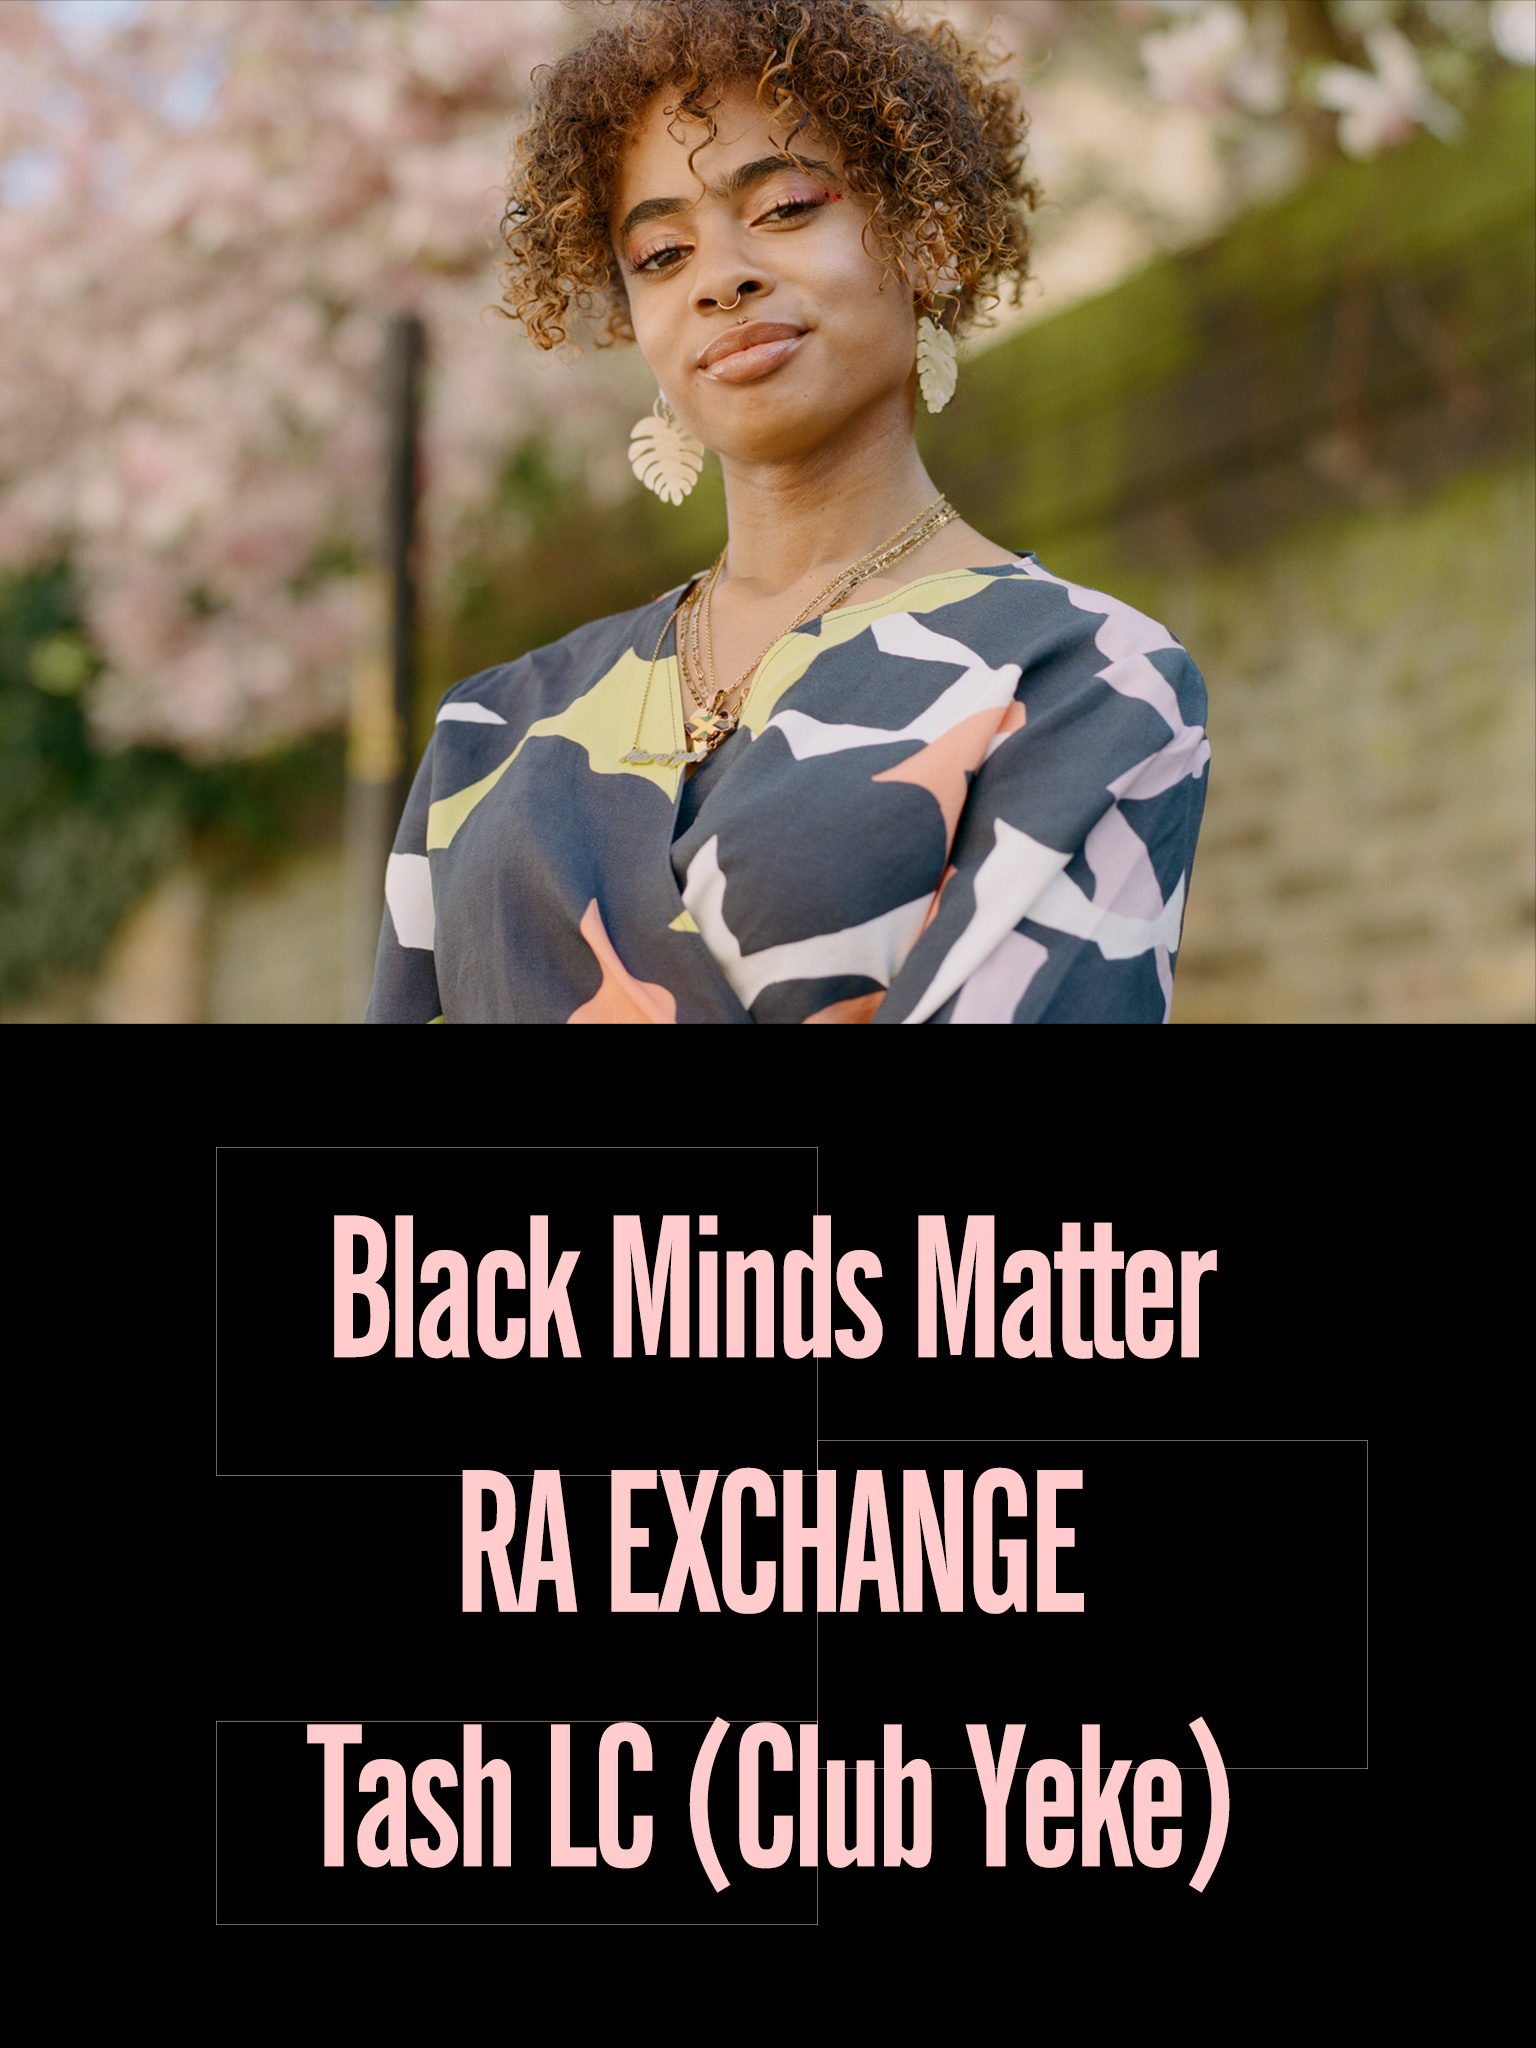 Black Minds Matter UK x RA Exchange: Tash LC (Club Yeke) 